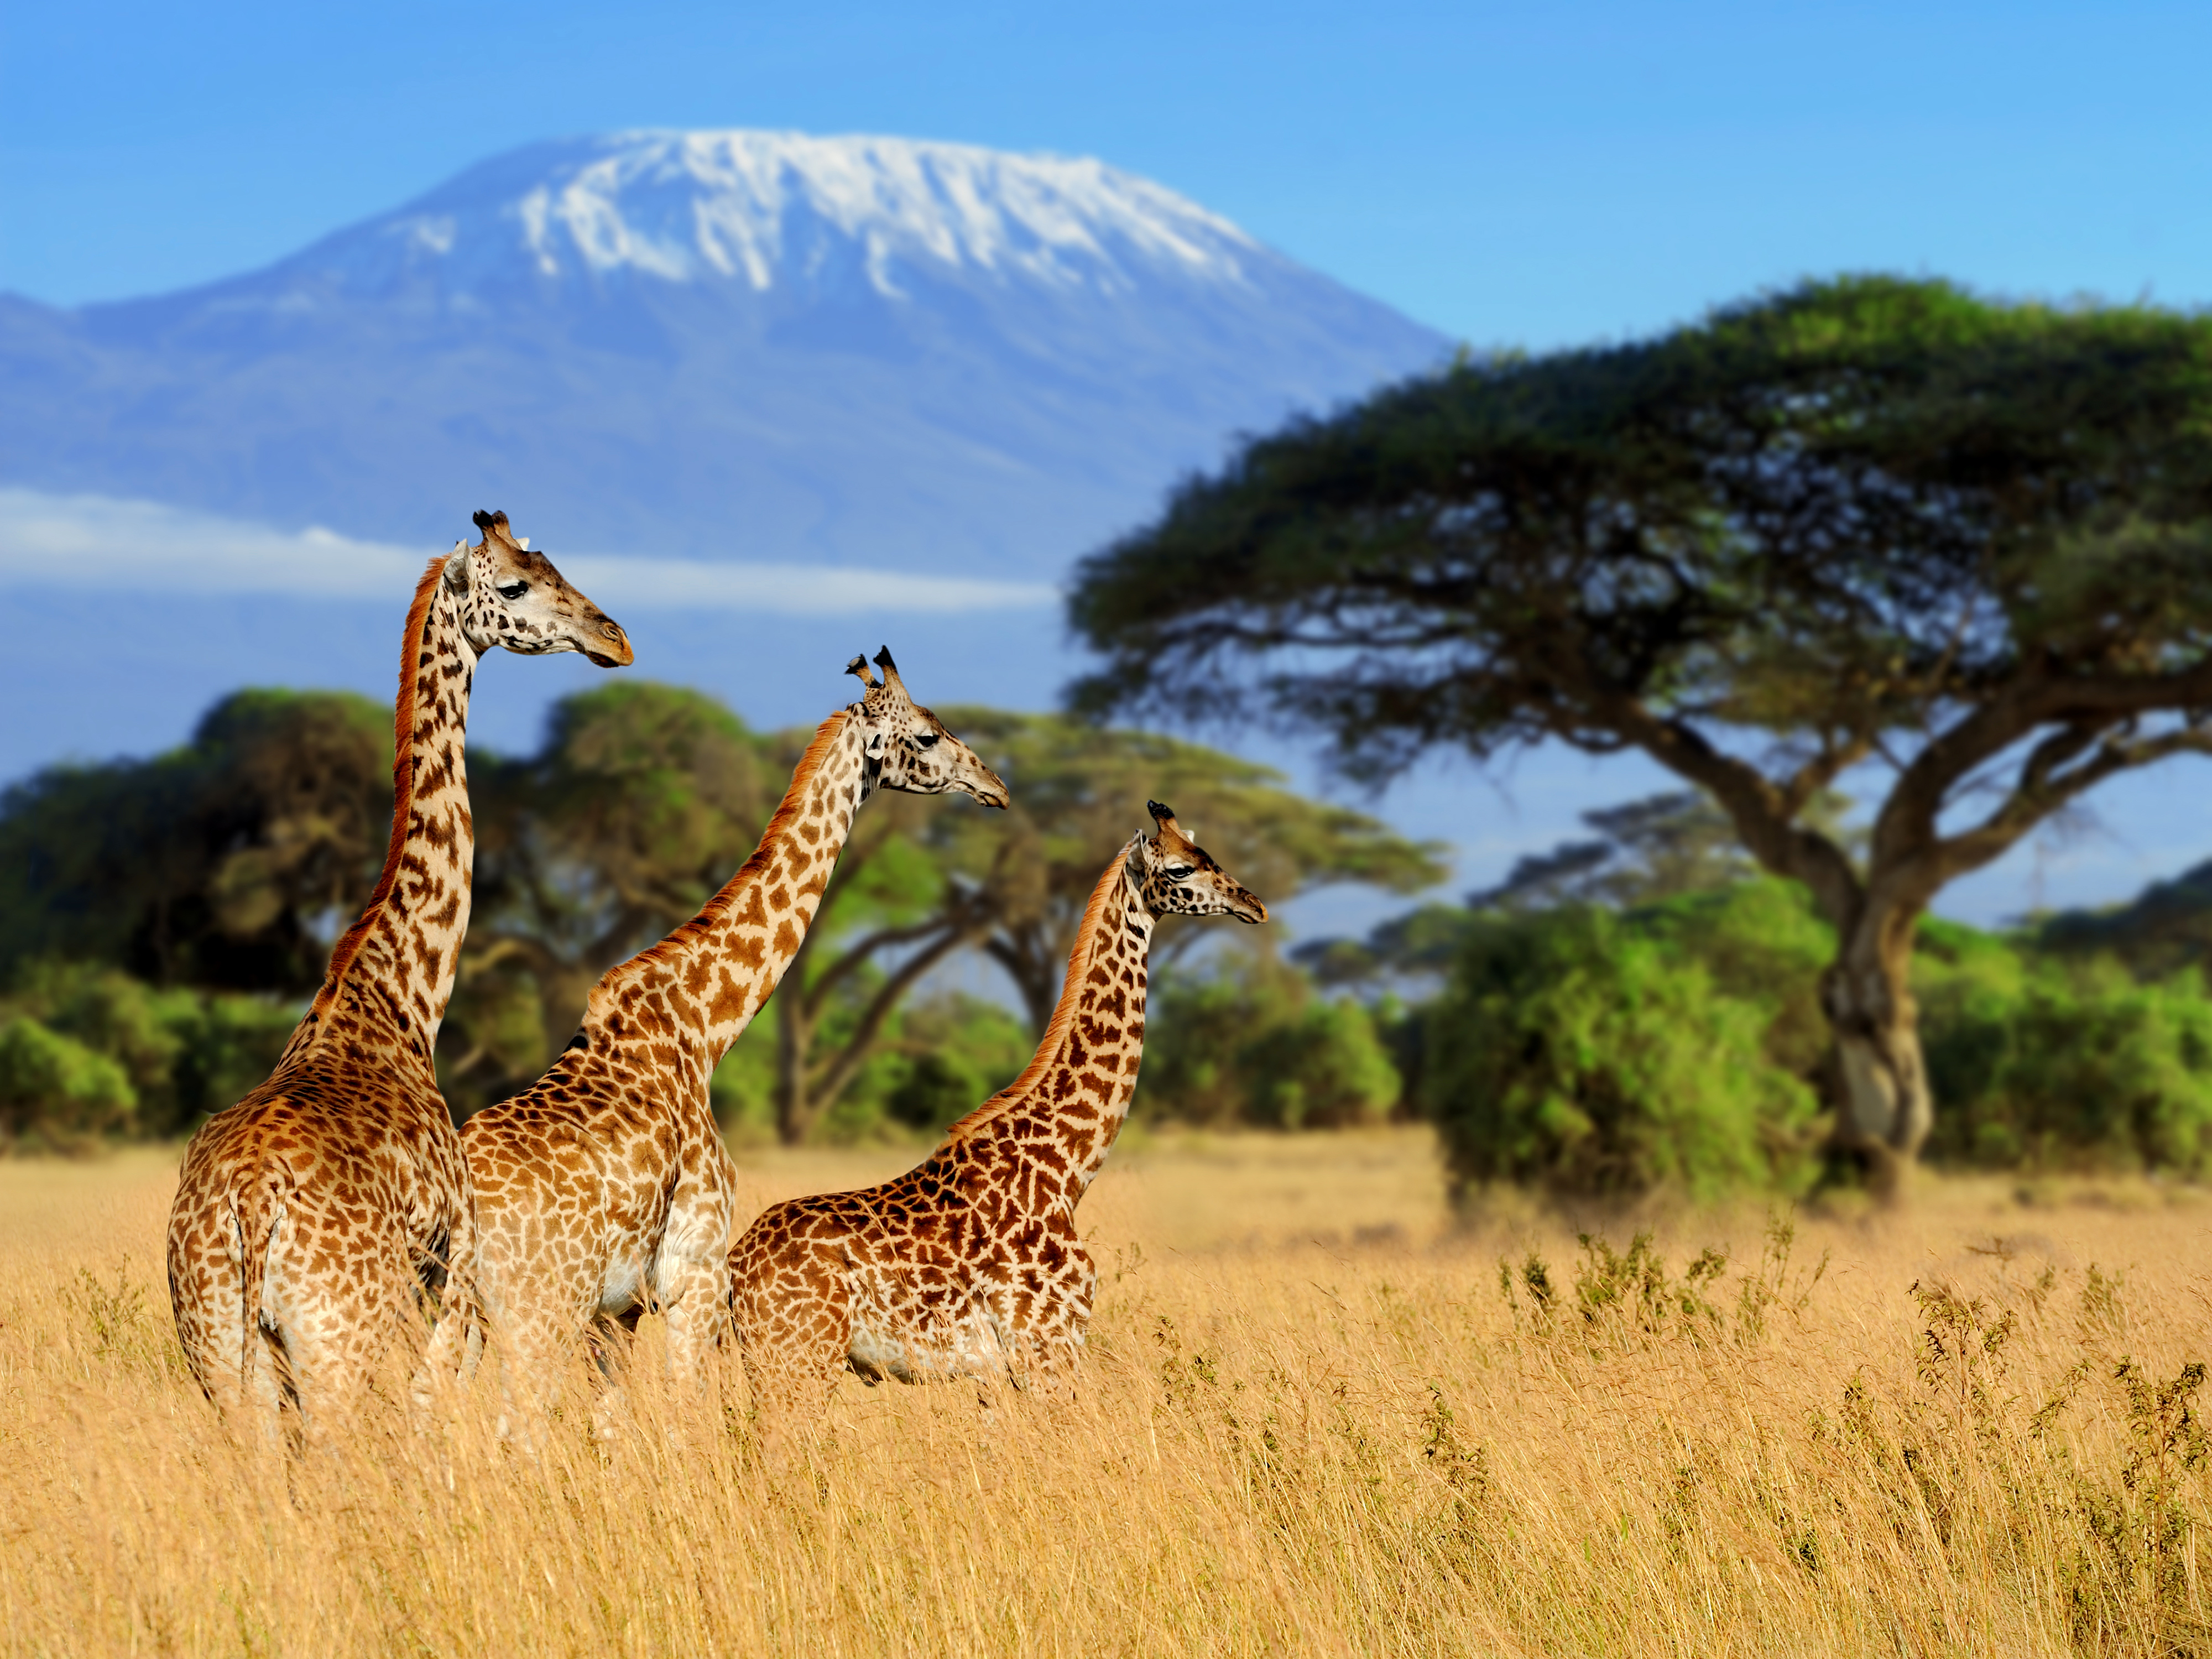 Wild giraffes in Africa